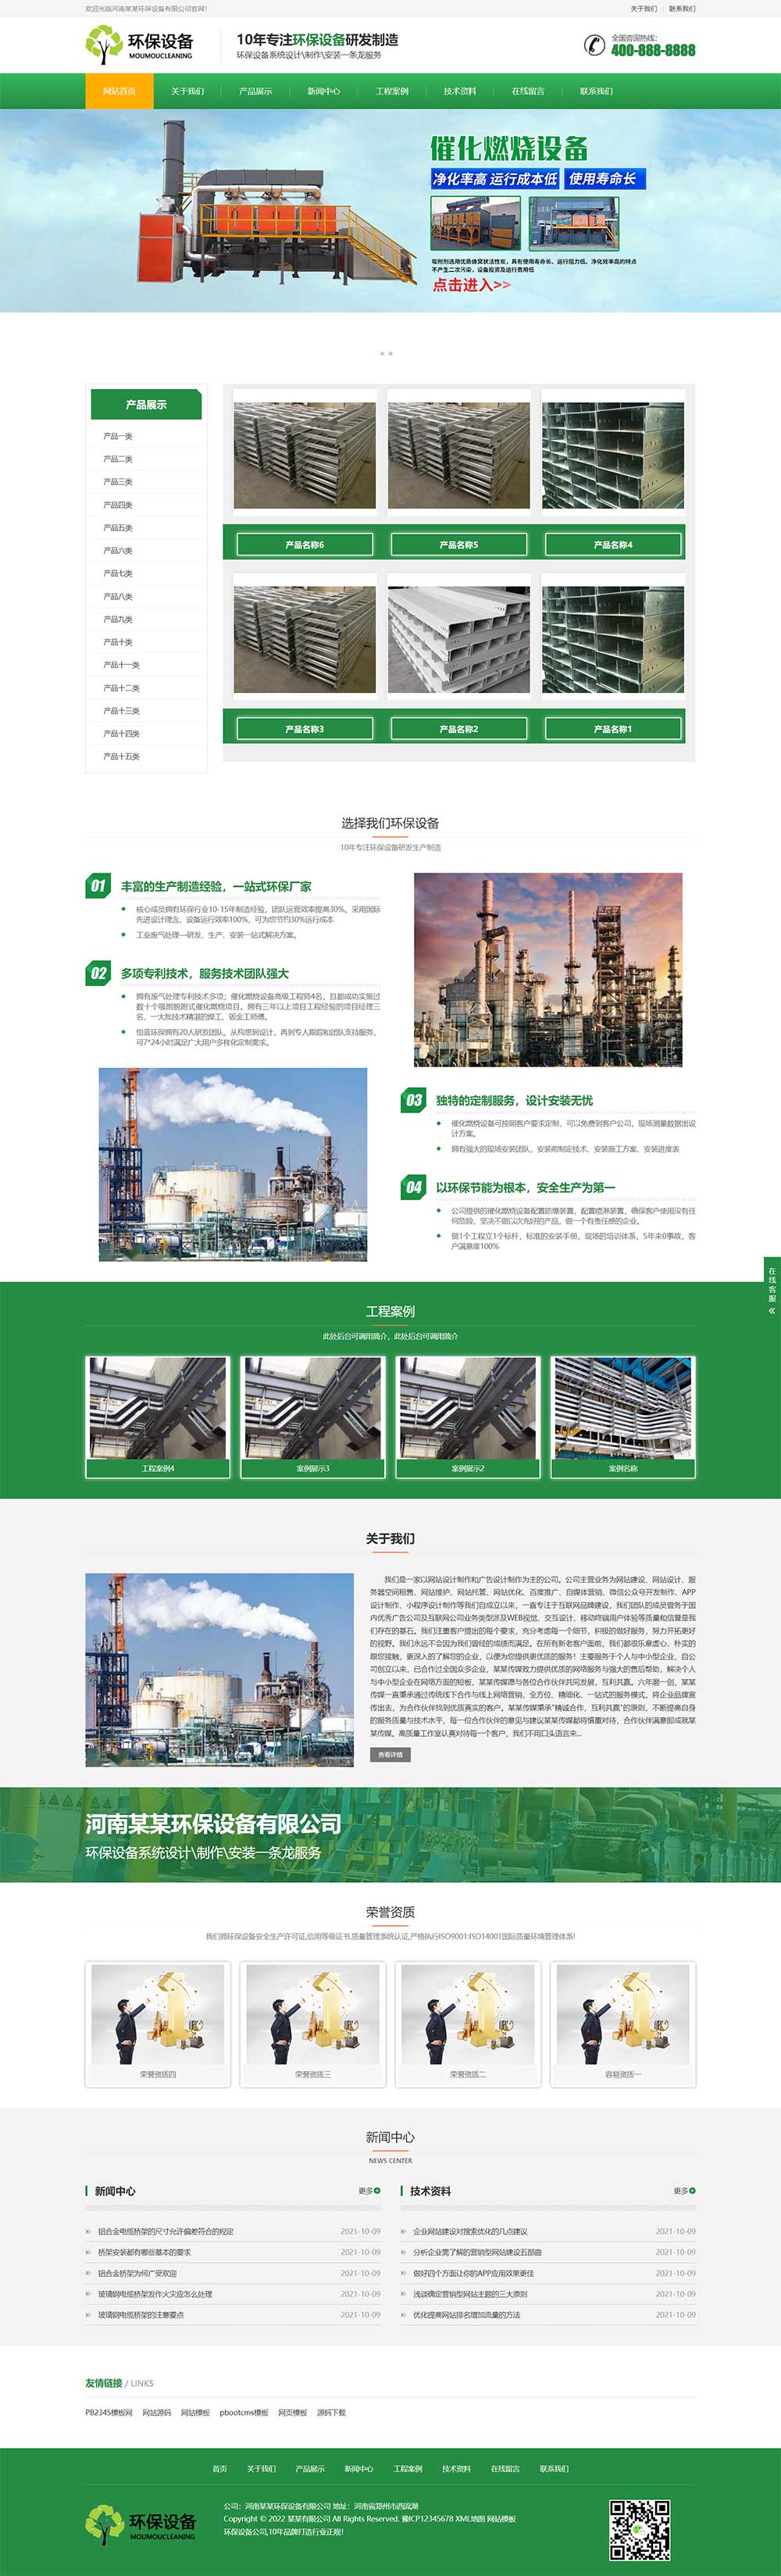 PBOOTCMS响应式营销型环保设备科技类网站模板绿色环保材料网站源码下载(自适应手机版)